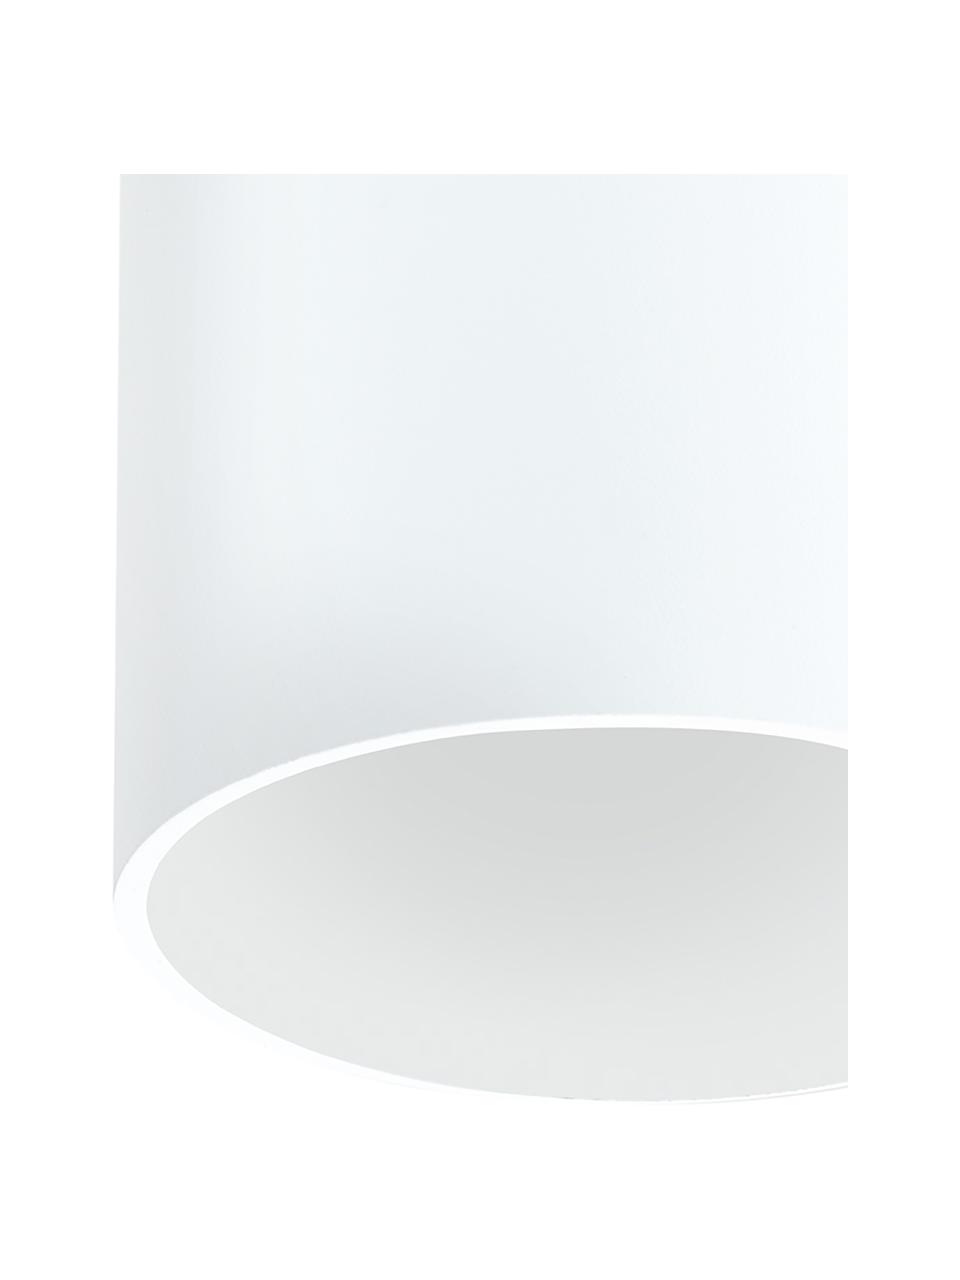 LED-Deckenspot Marty in Weiß, Lampenschirm: Metall, pulverbeschichtet, Weiß, matt, Ø 10 x H 12 cm